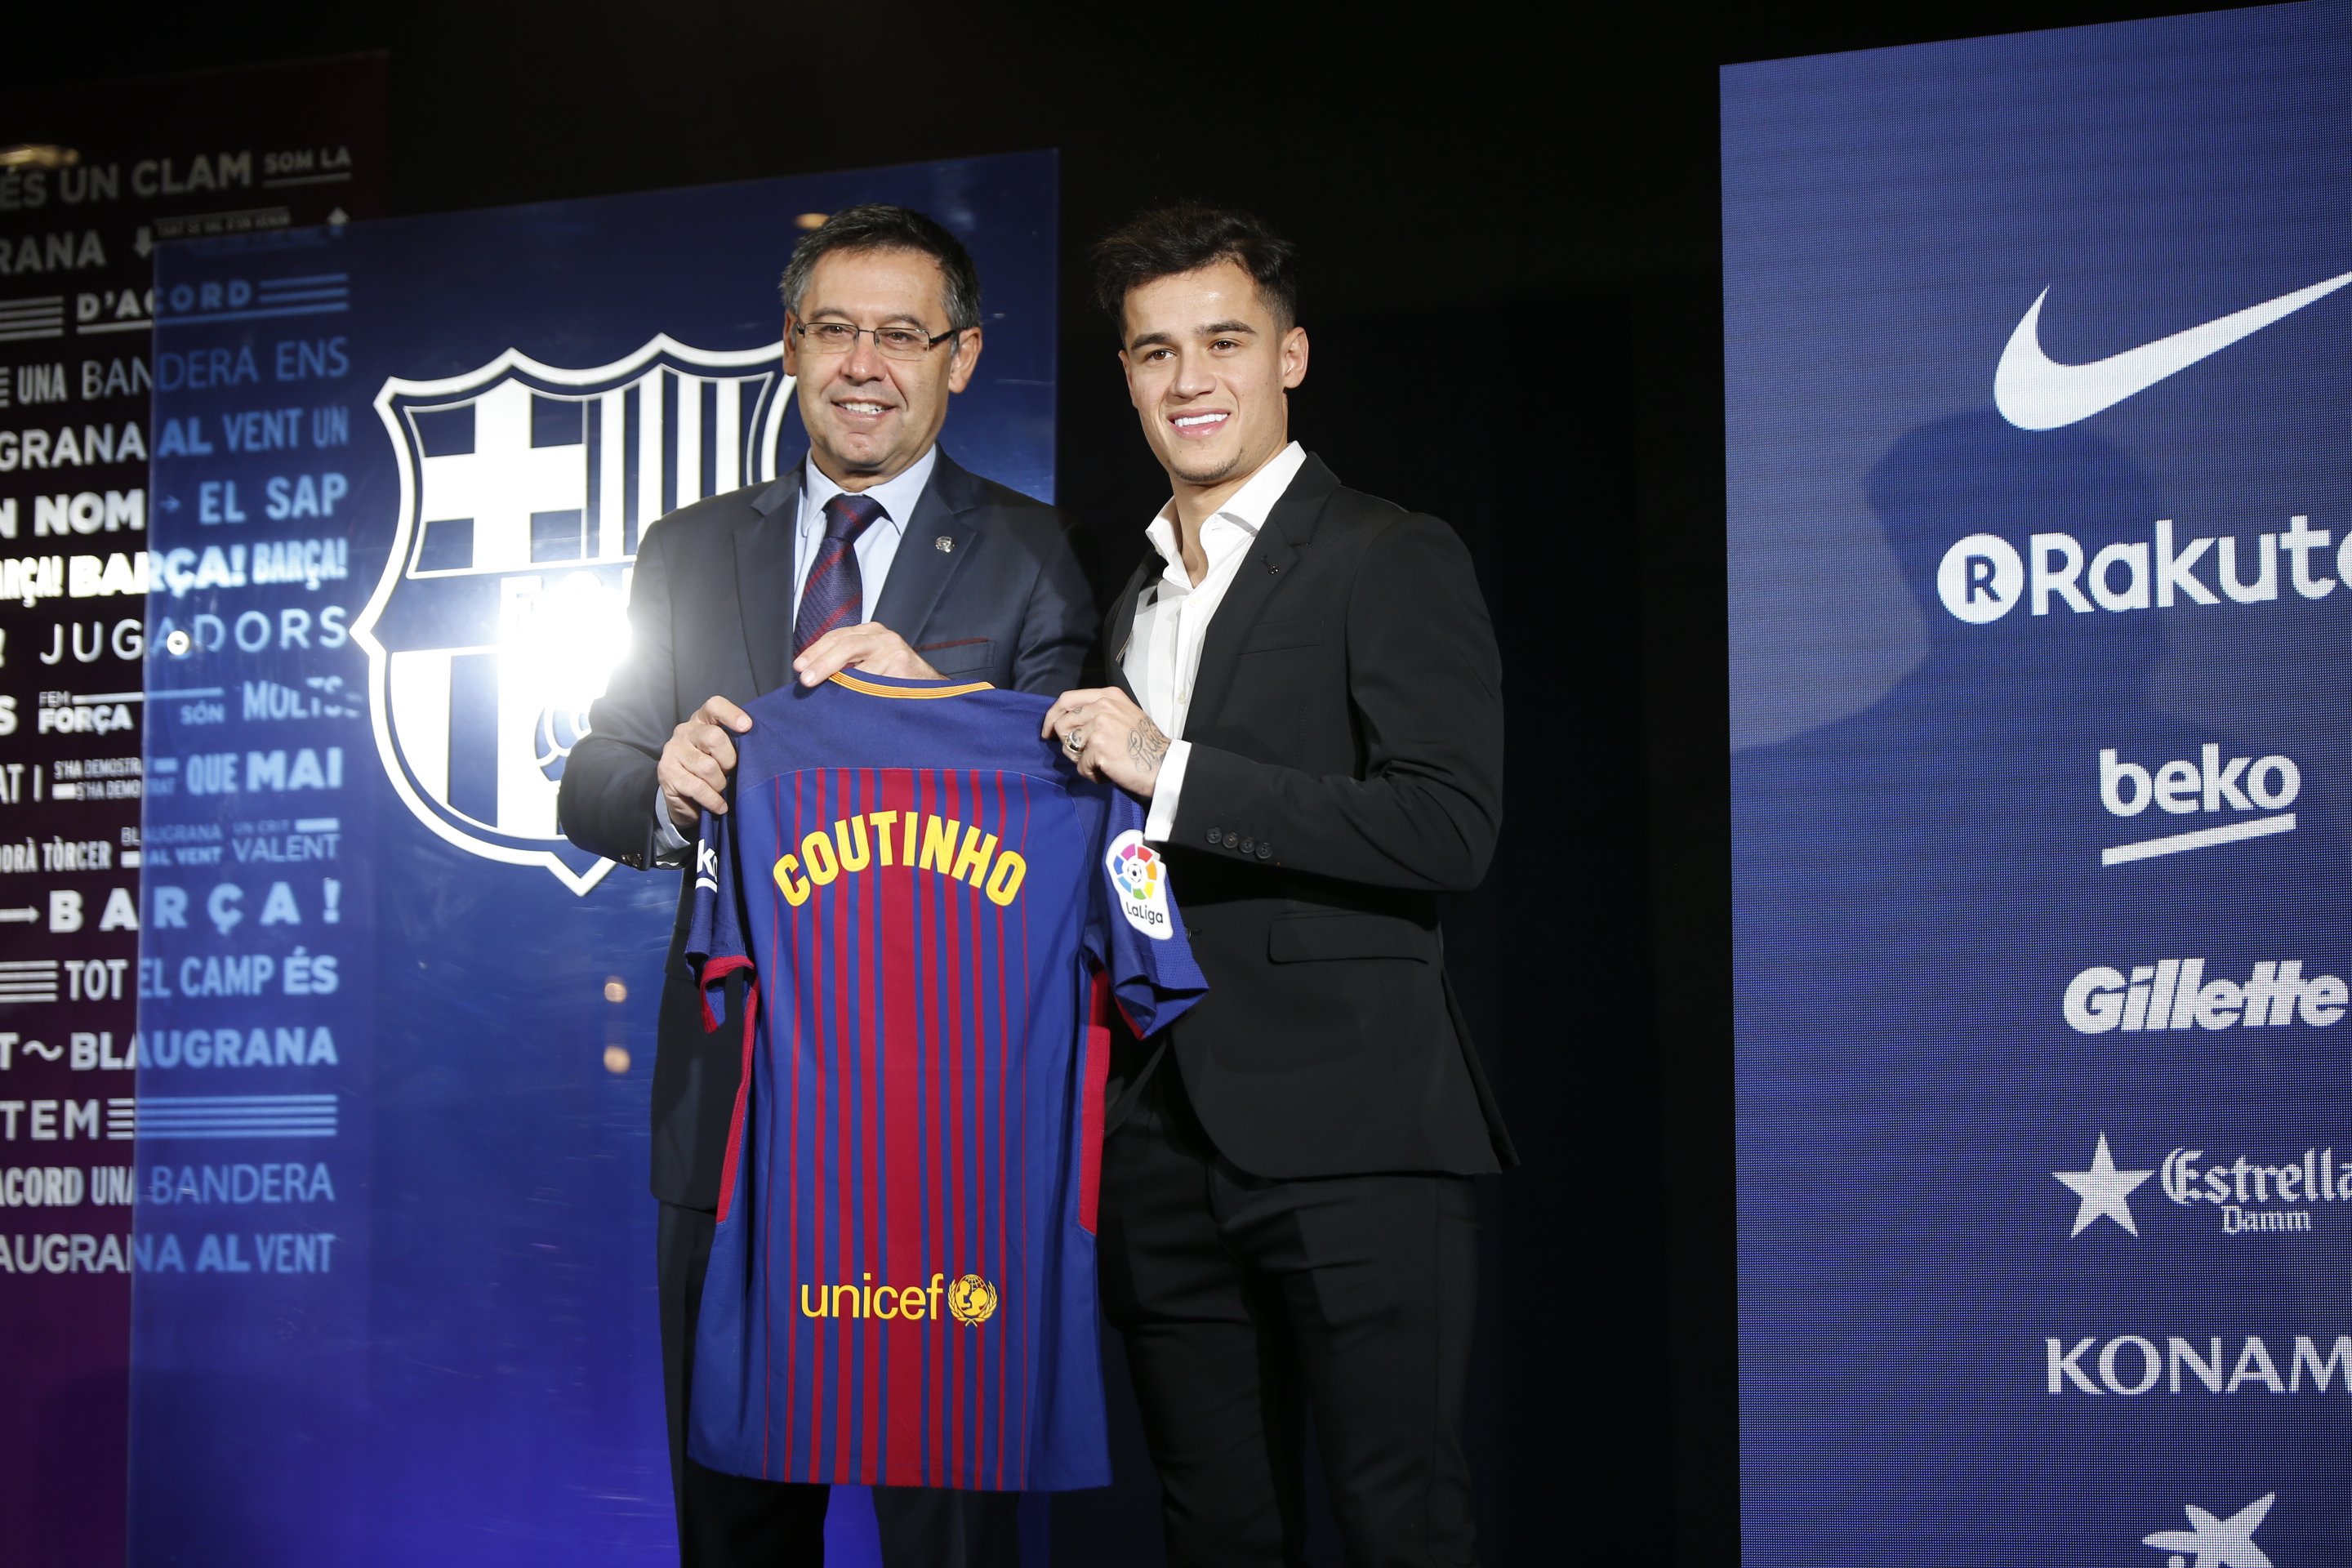 La màquina de gastar milions: el Barça i els clubs amics